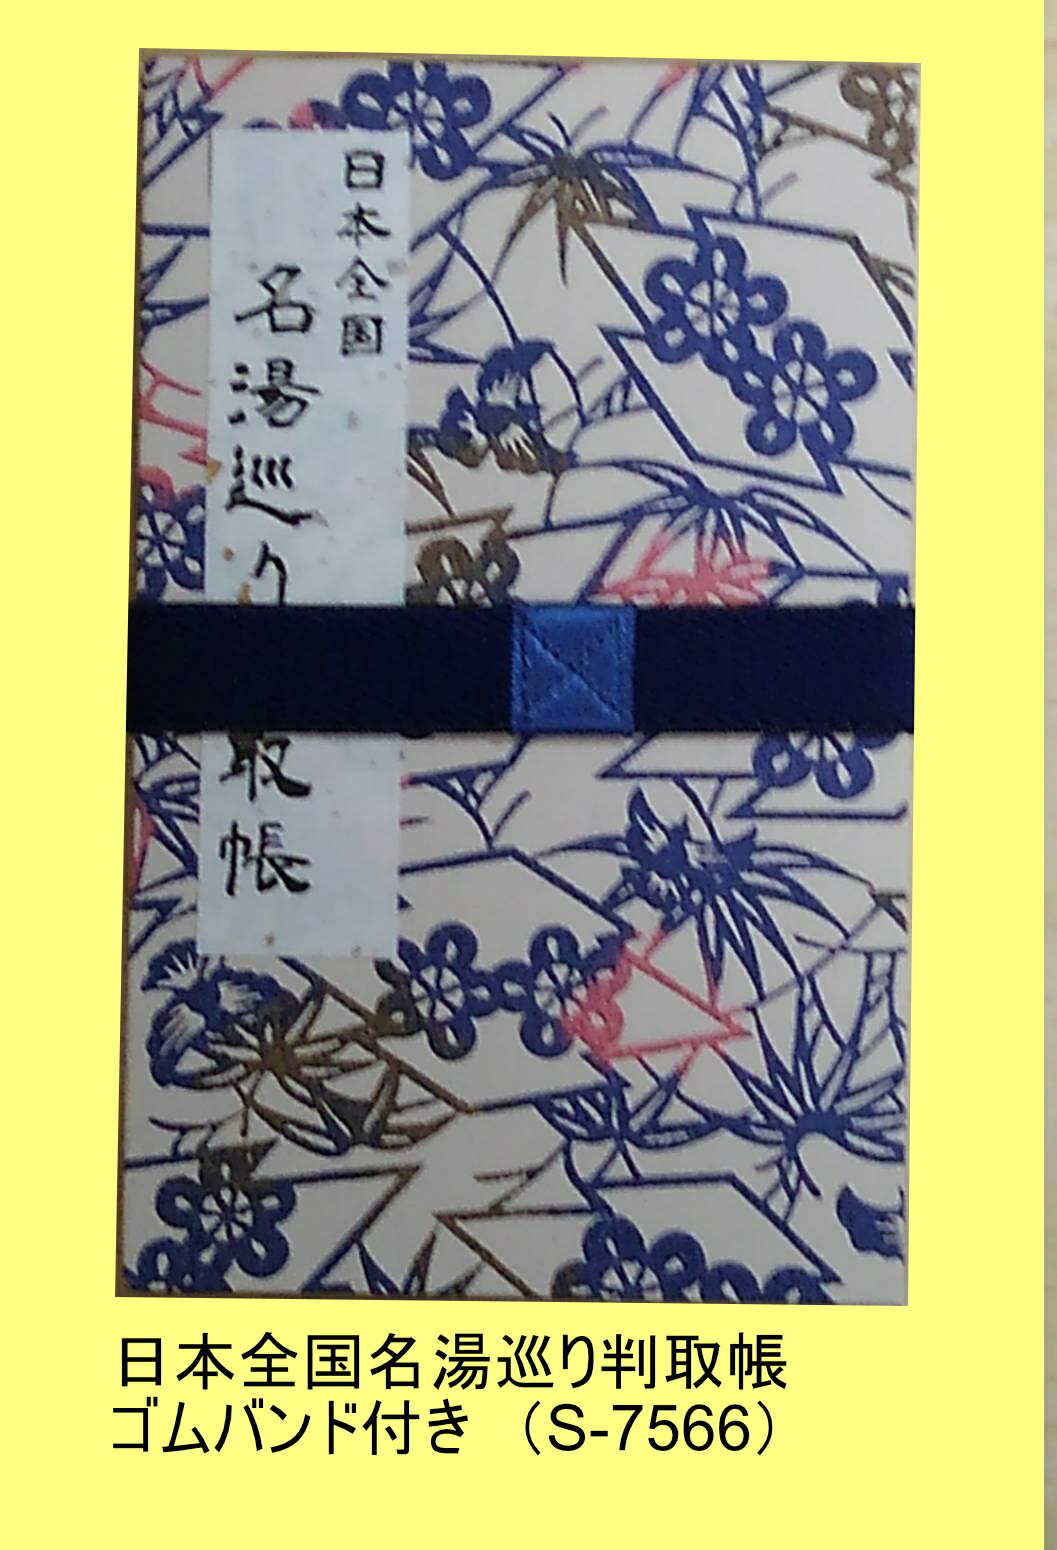 日本全国名湯巡り判取帳S-7566 ゴムバンド付...の商品画像